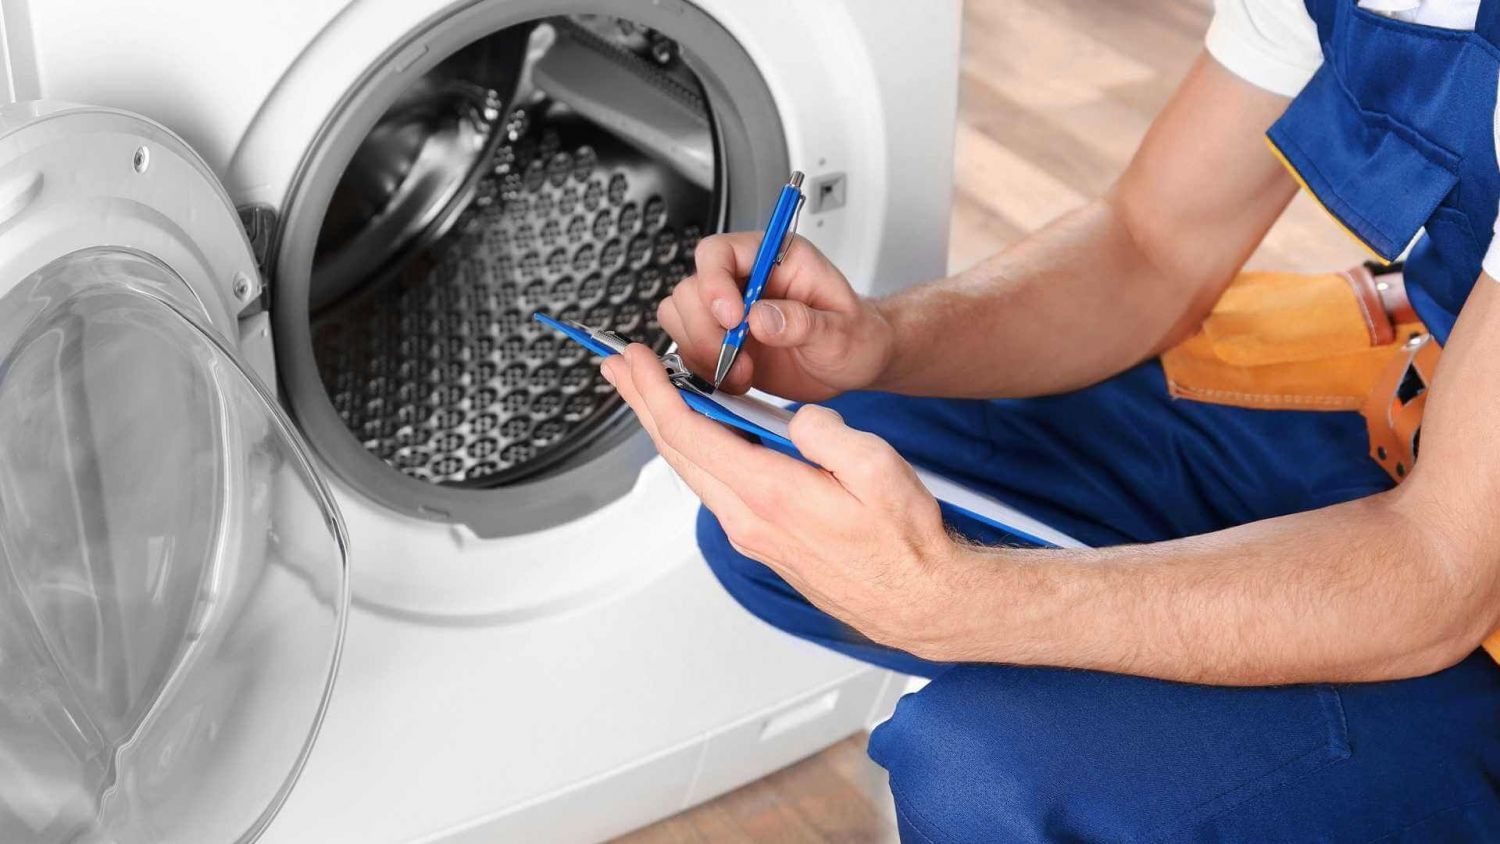 Ремонт помпы стиральной машины LG своими руками